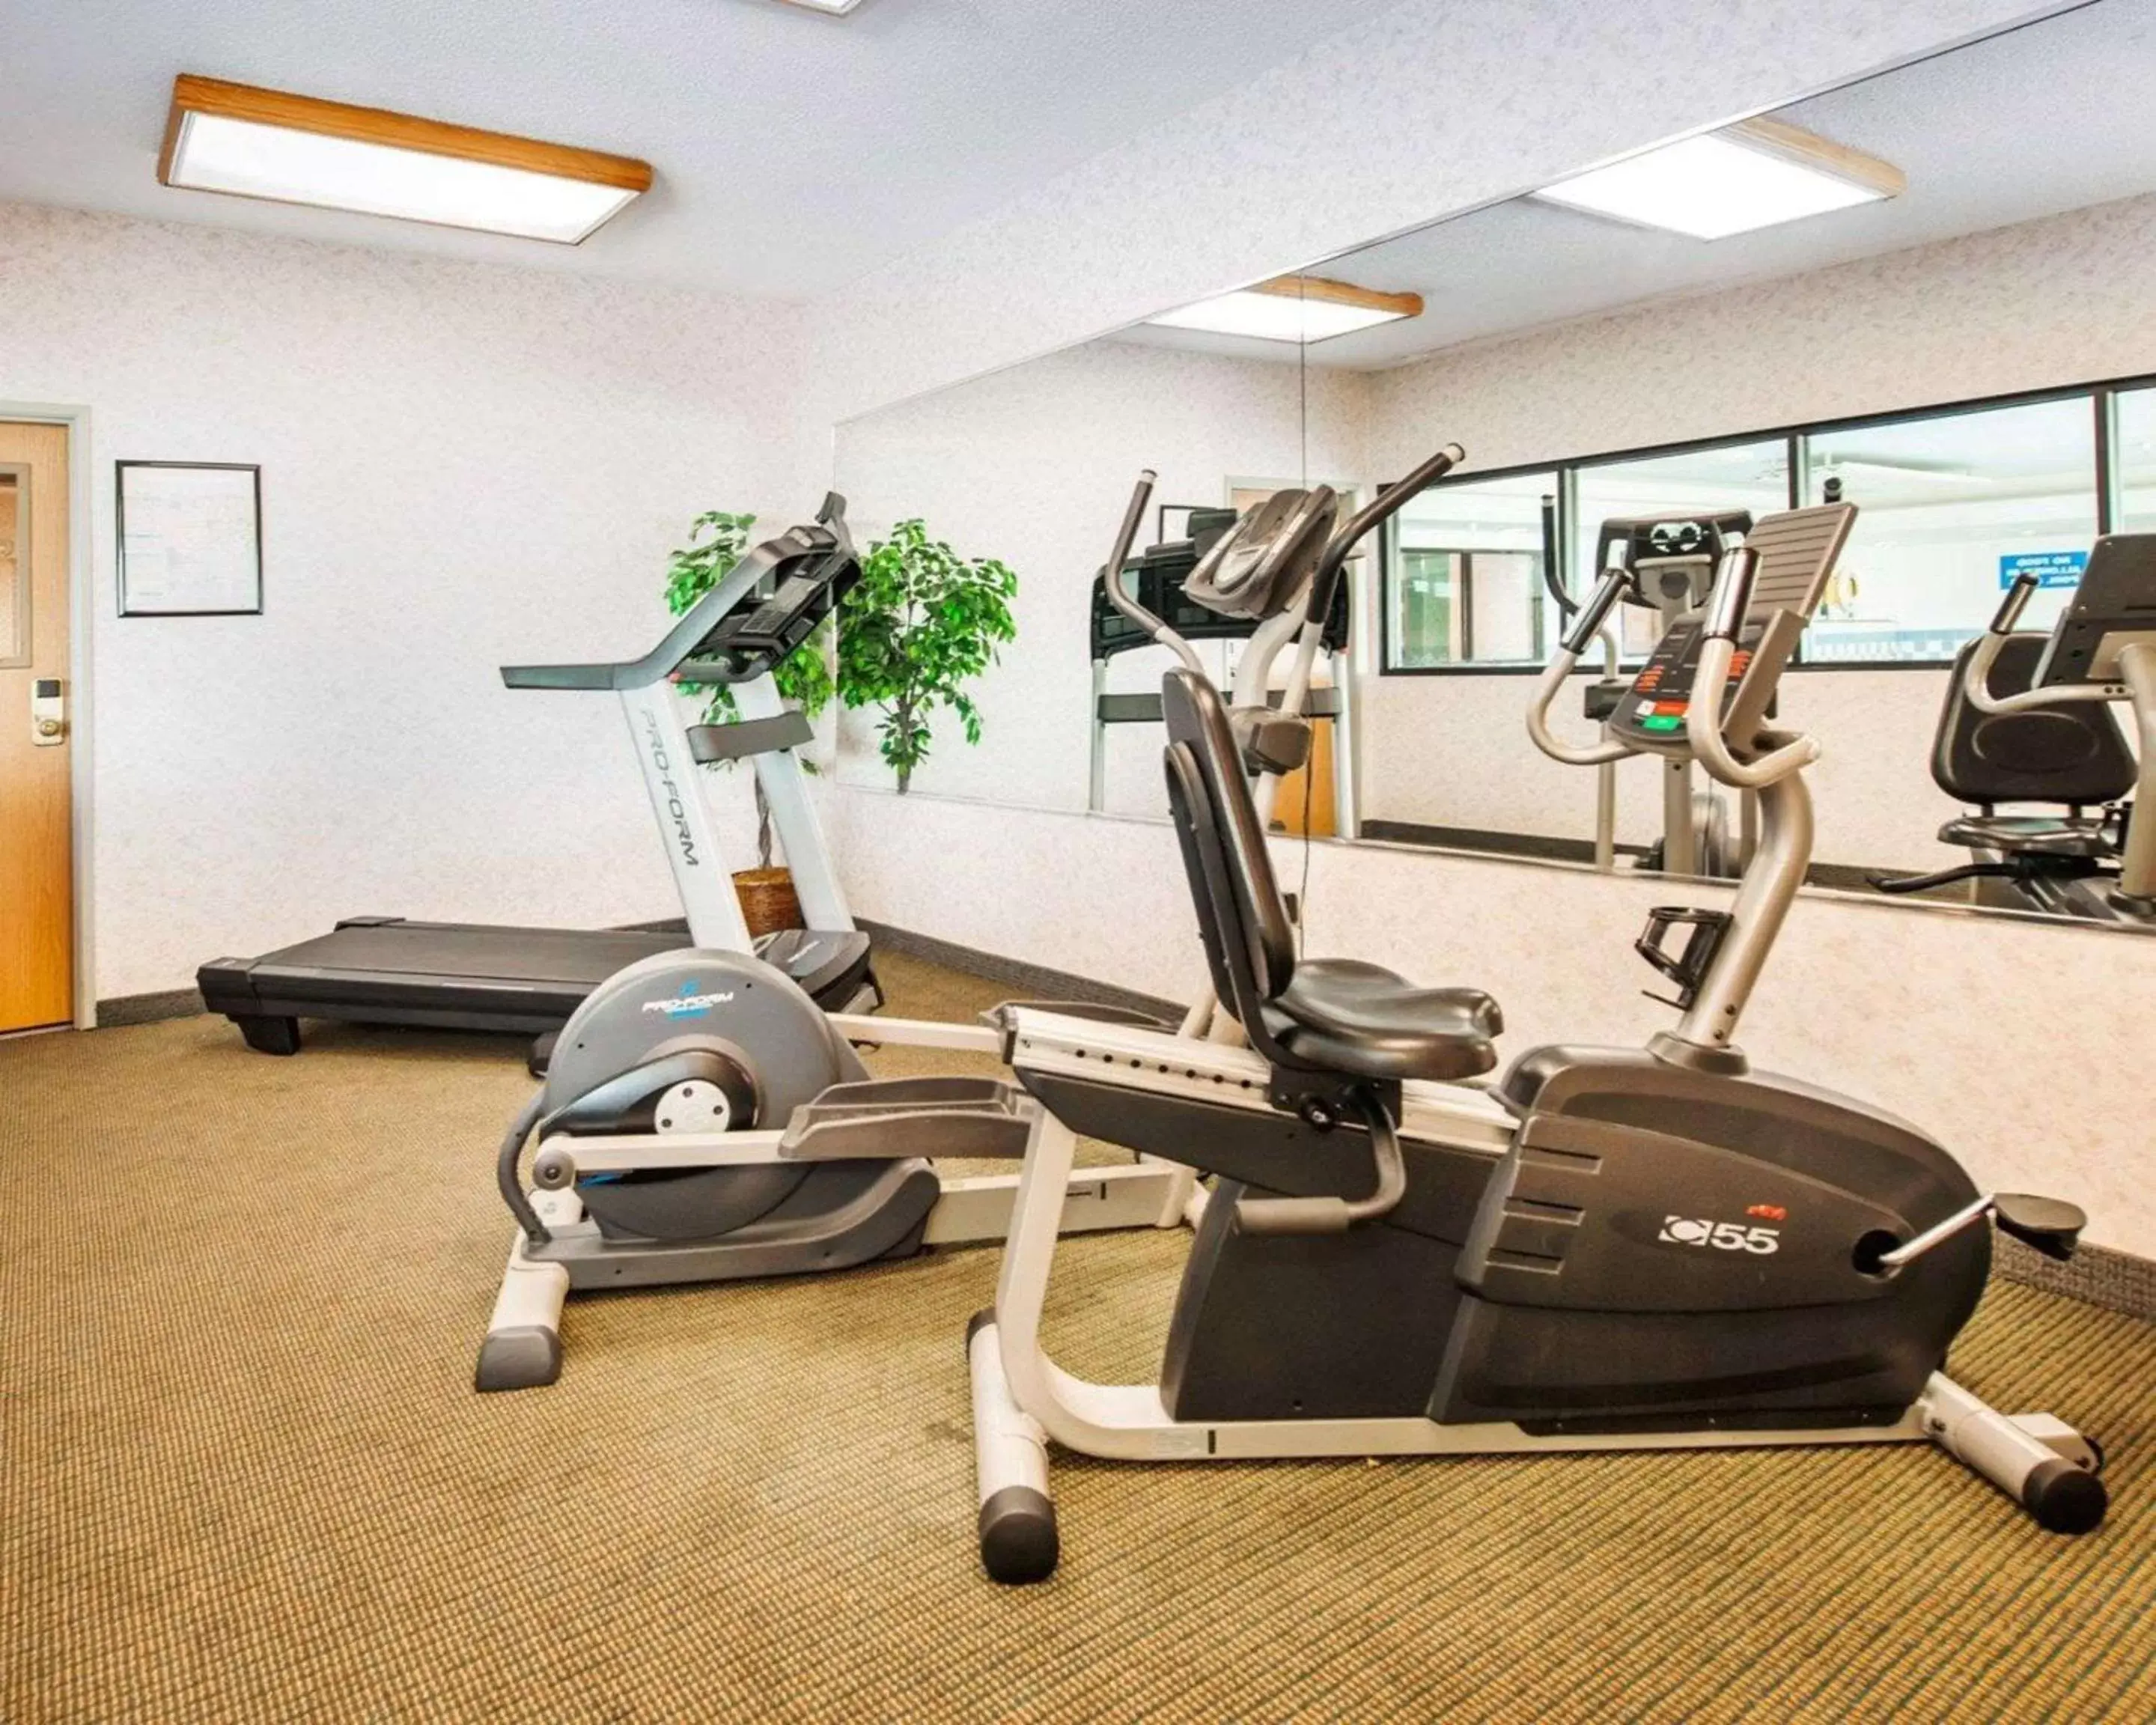 Fitness centre/facilities, Fitness Center/Facilities in Comfort Inn Goshen